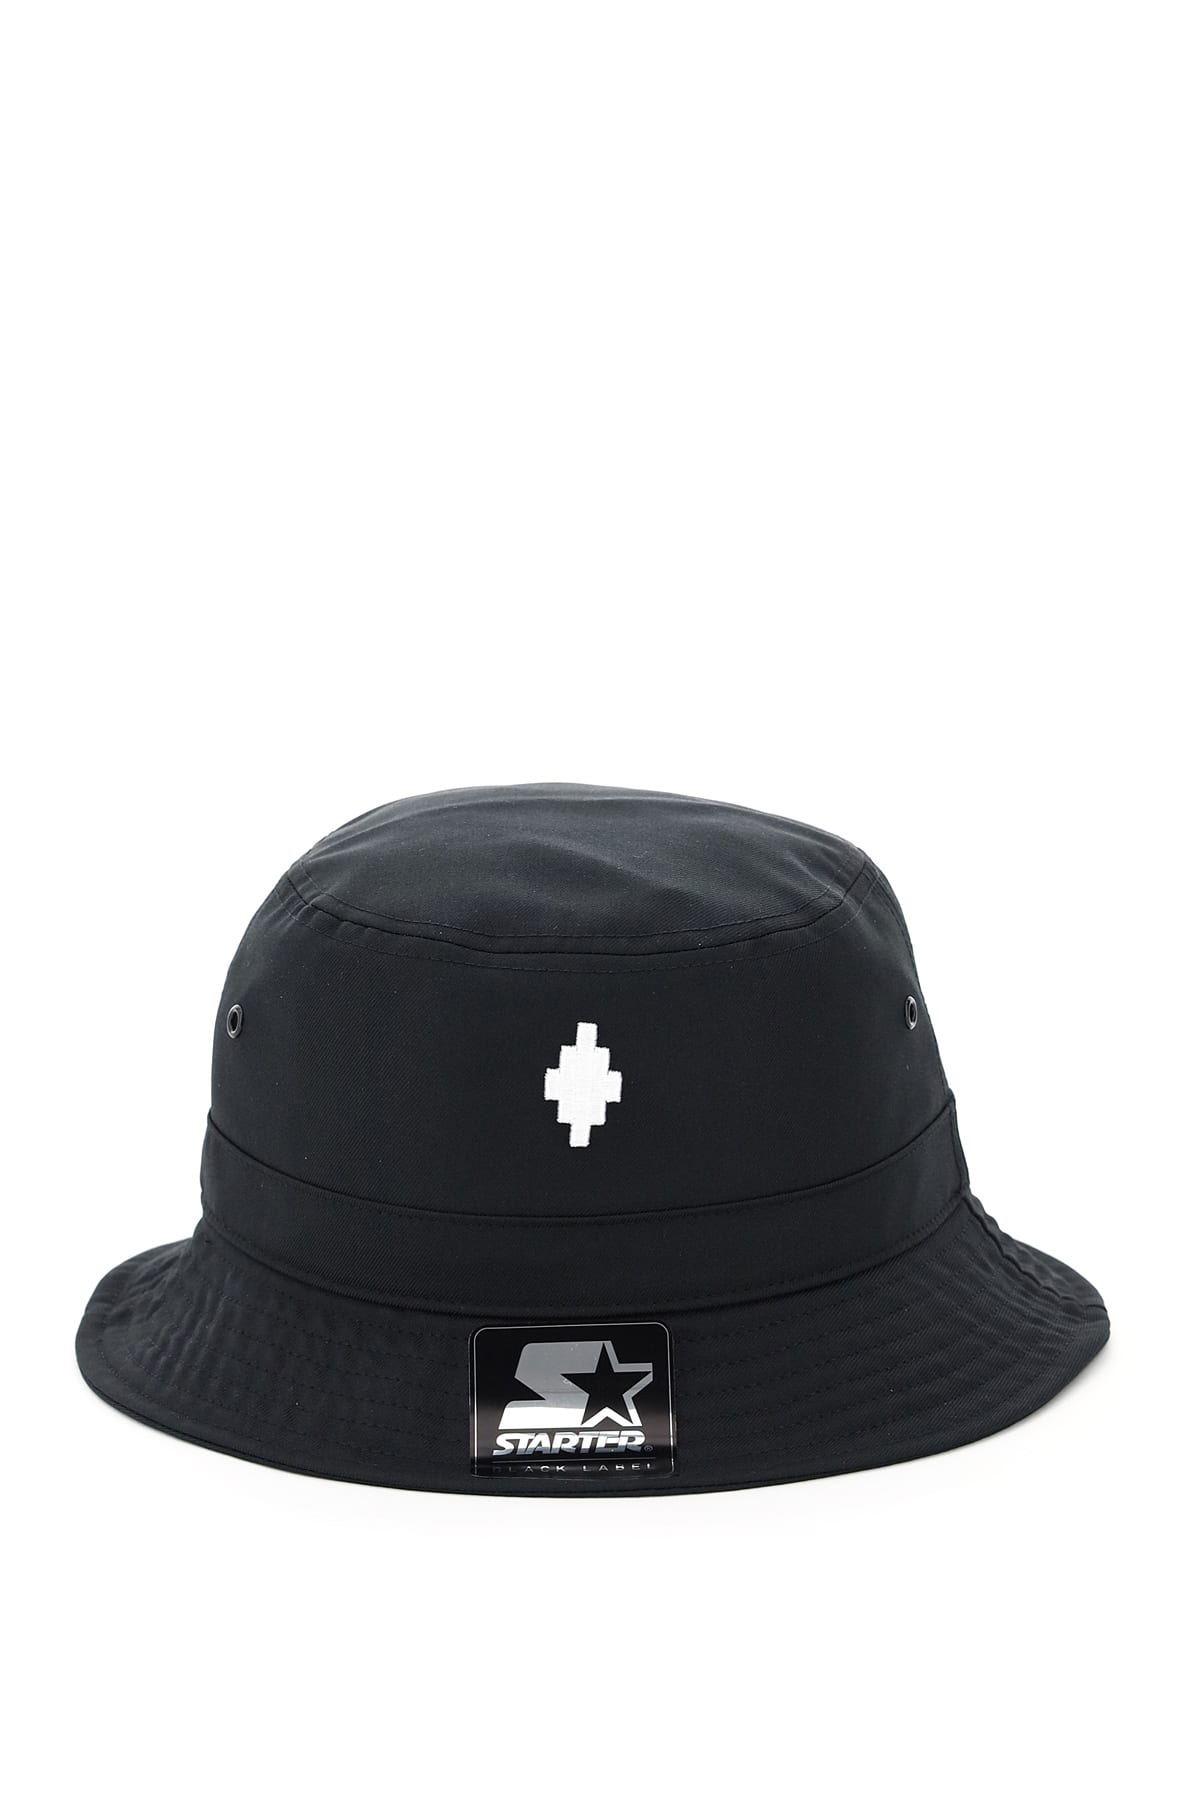 Marcelo Burlon Starter Cross Bucket Hat - BLACK - male - Size: 0one size